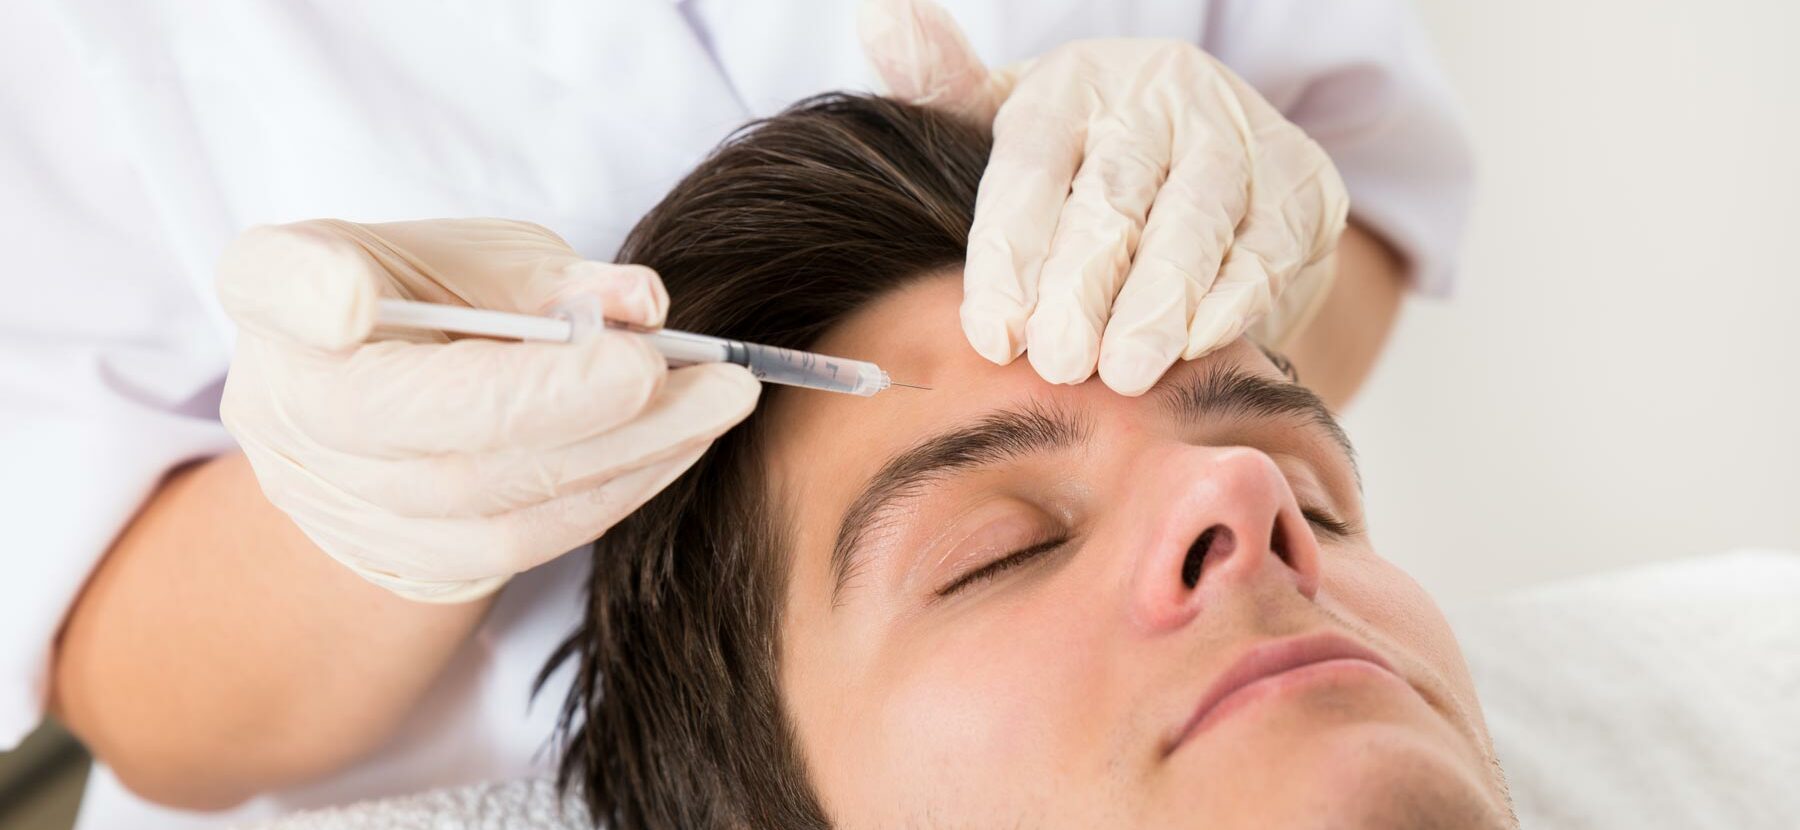 Facharzt injiziert einem Mann Botulinumtoxin als Anti-Aging-Behandlung in die Stirn.